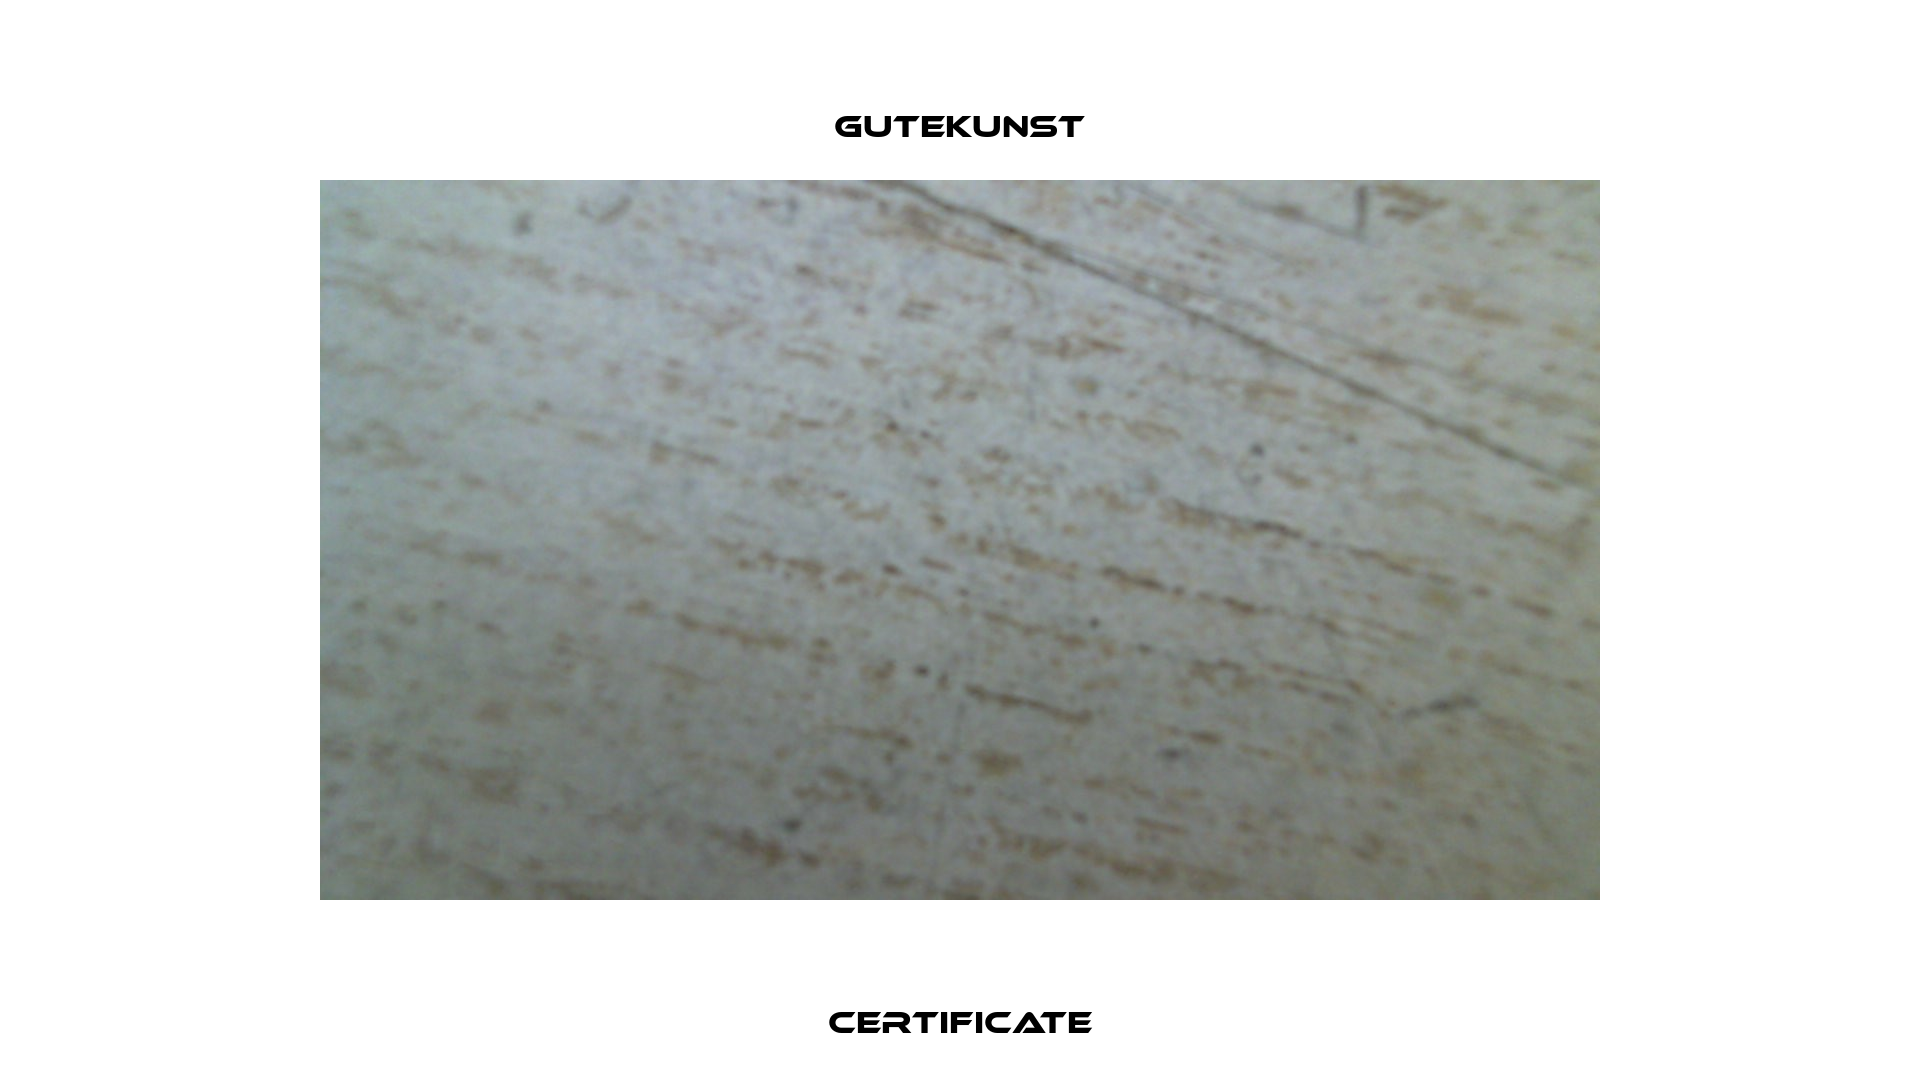 Certificate Gutekunst